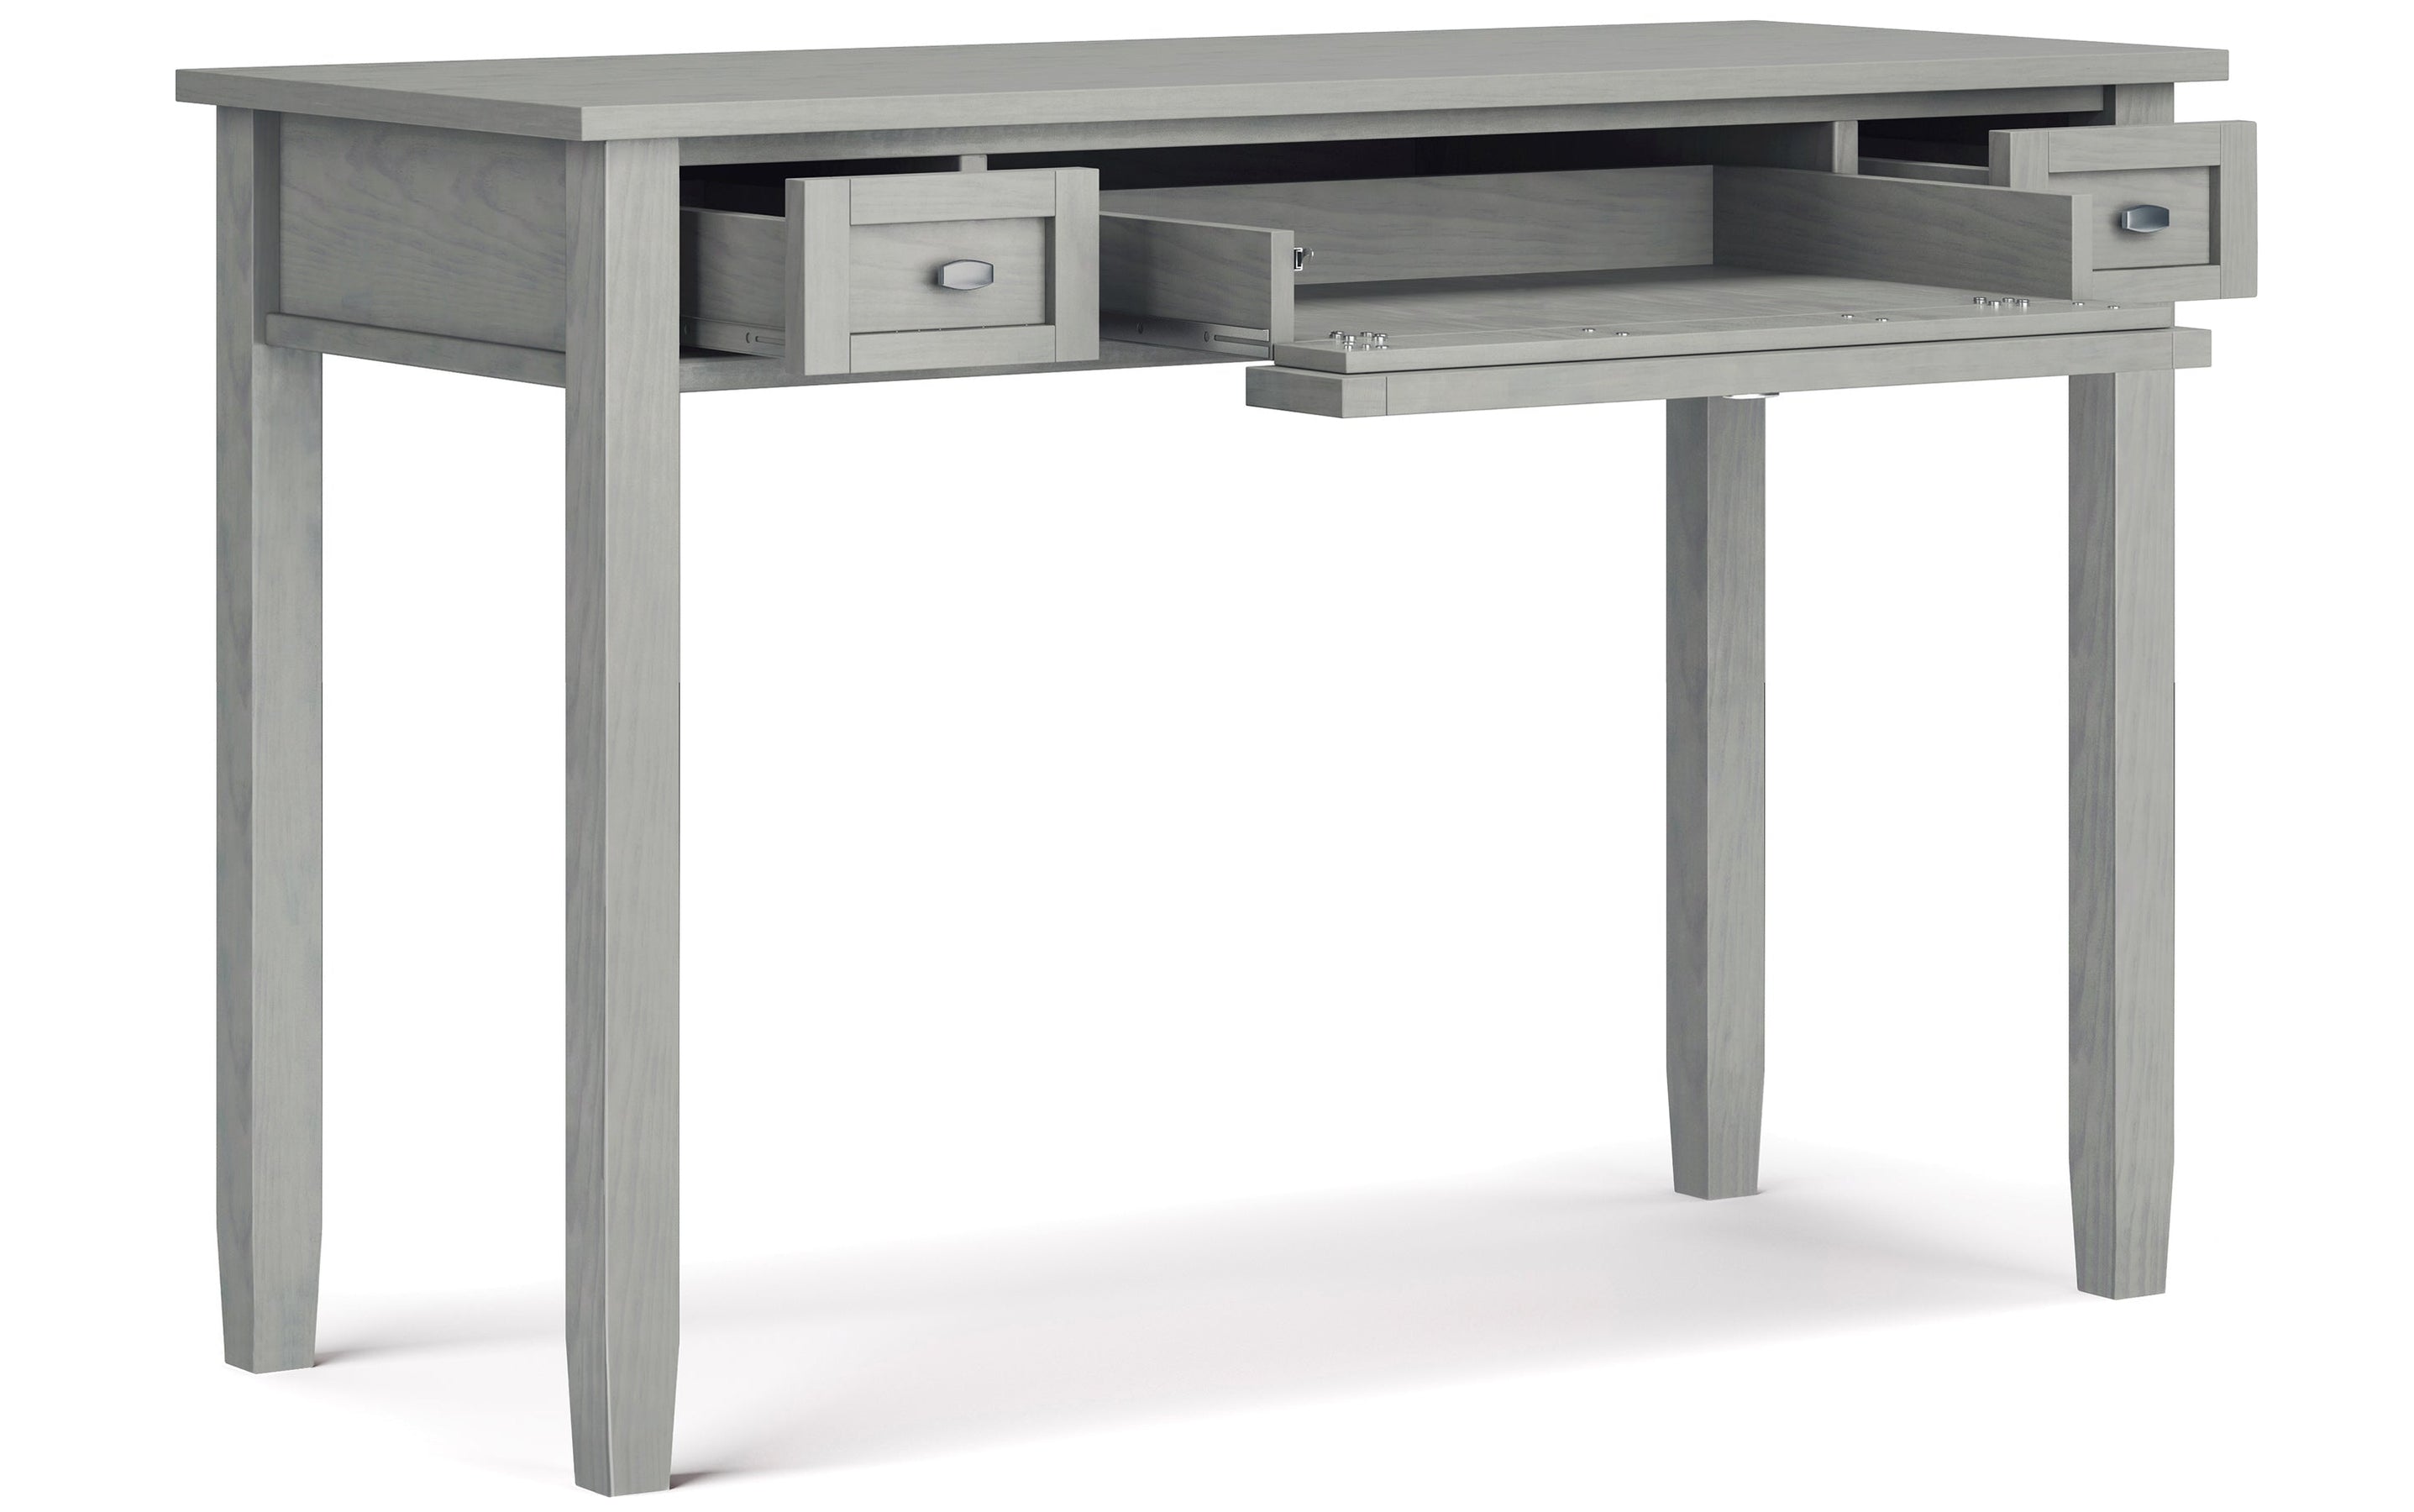 Fog Grey | Warm Shaker 48 inch Desk